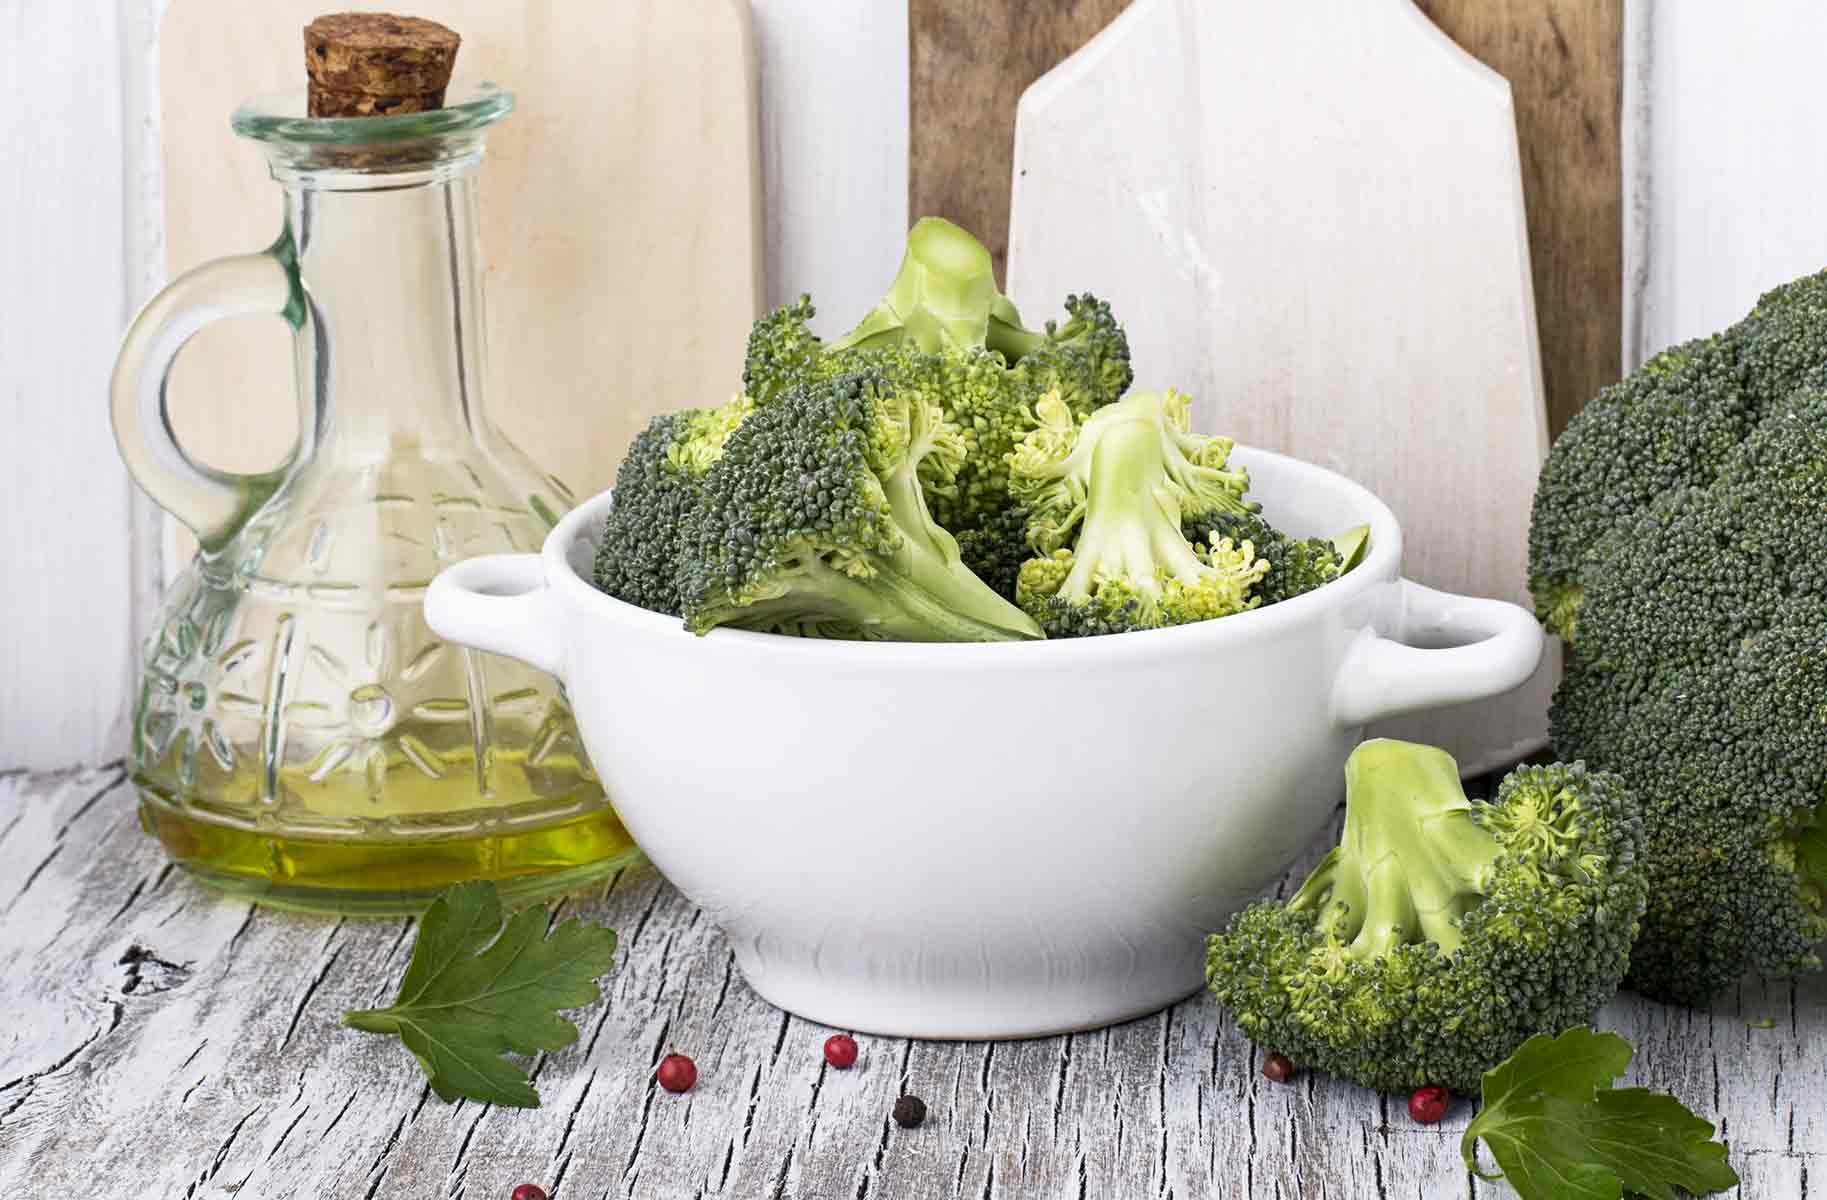 il gigante centri commerciali alimenti abbronzatura broccoli